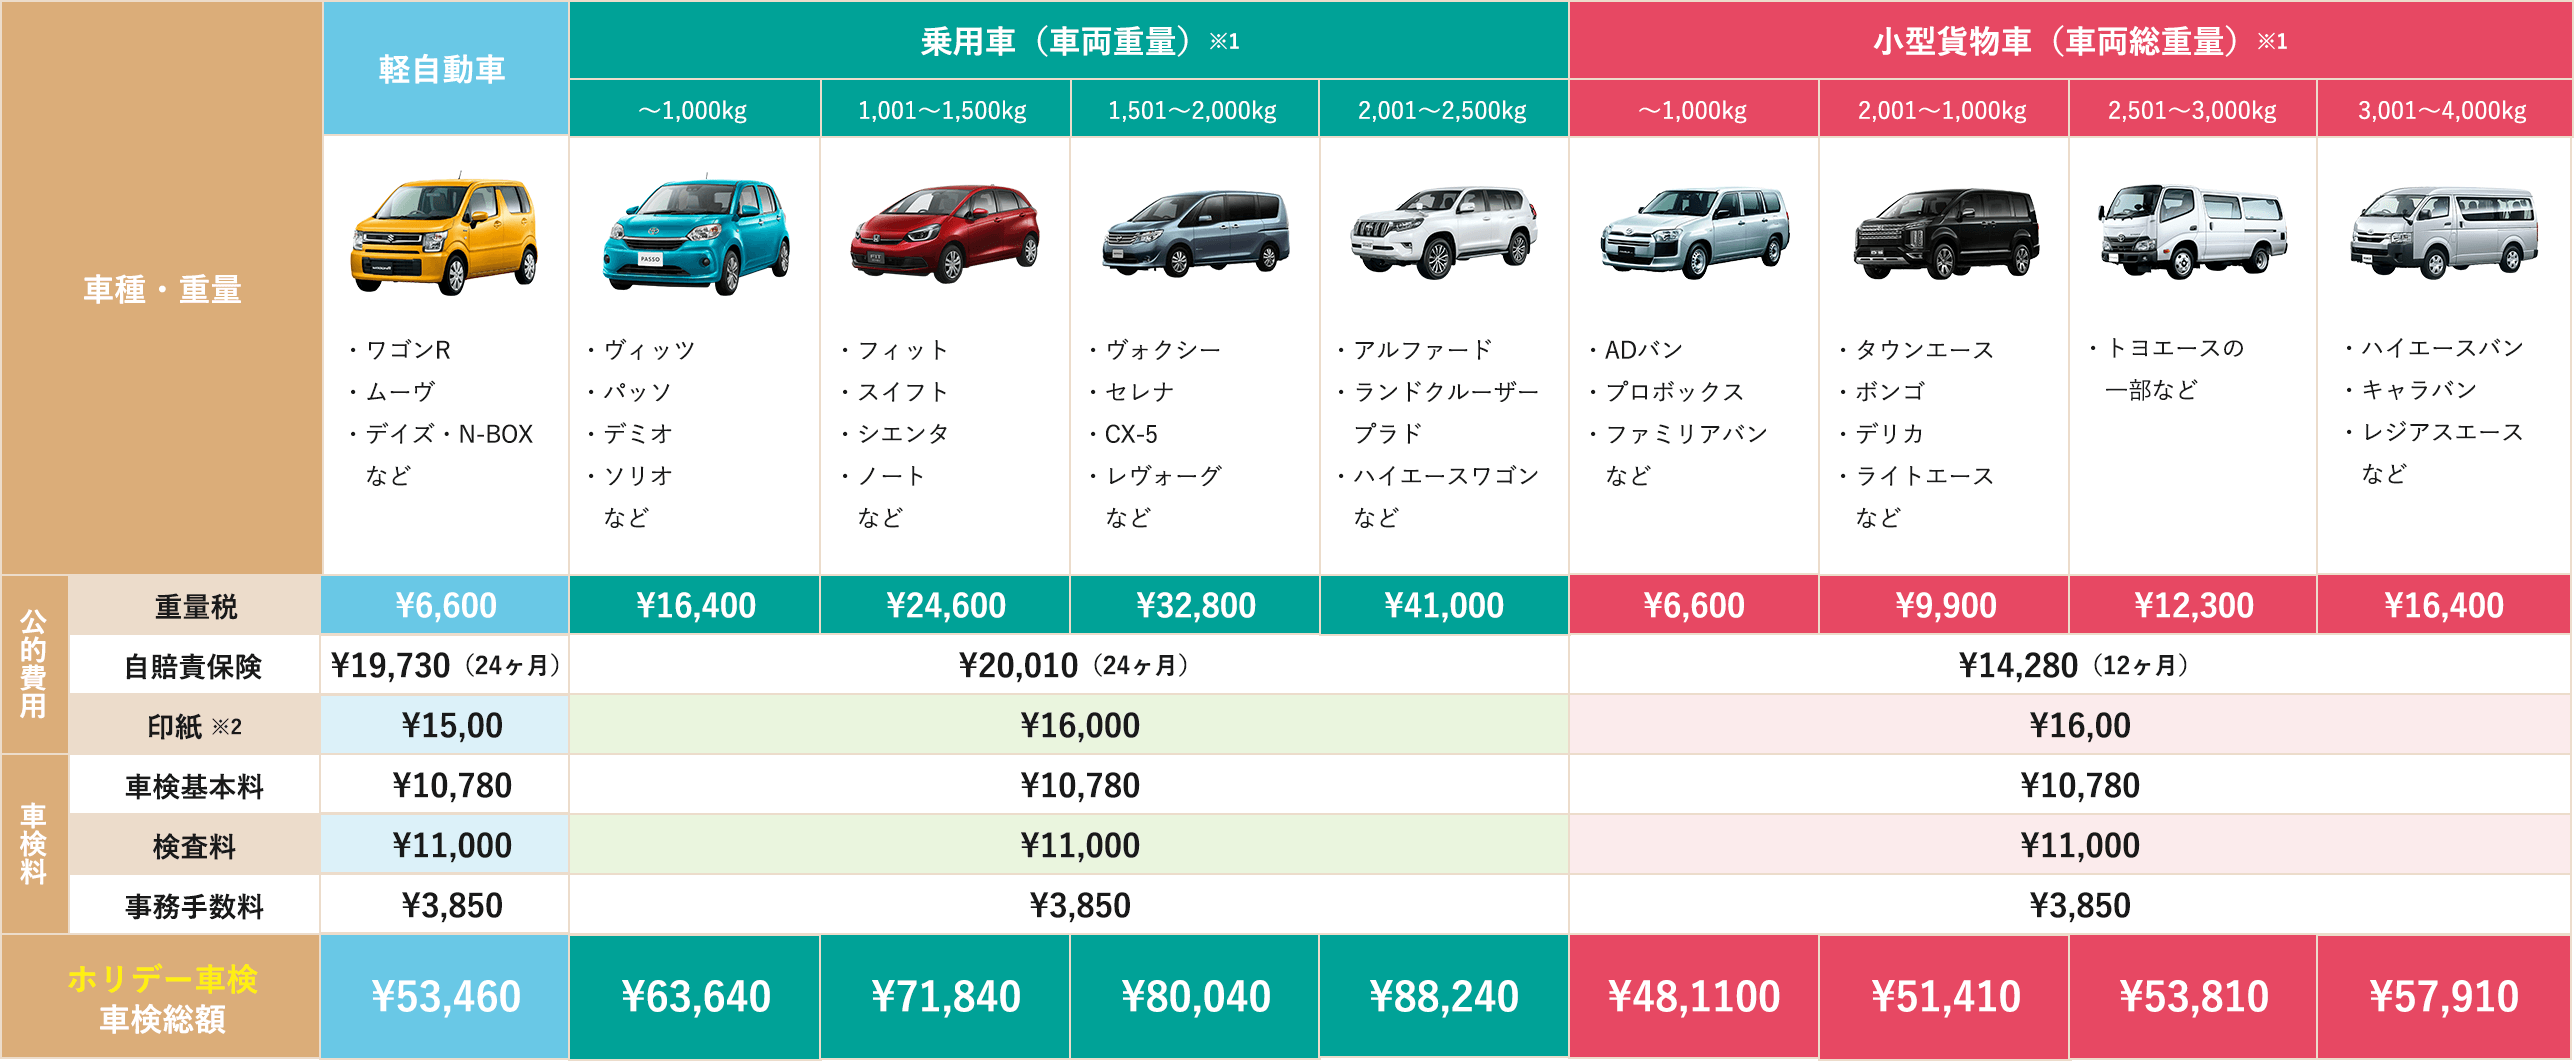 各車種価格表